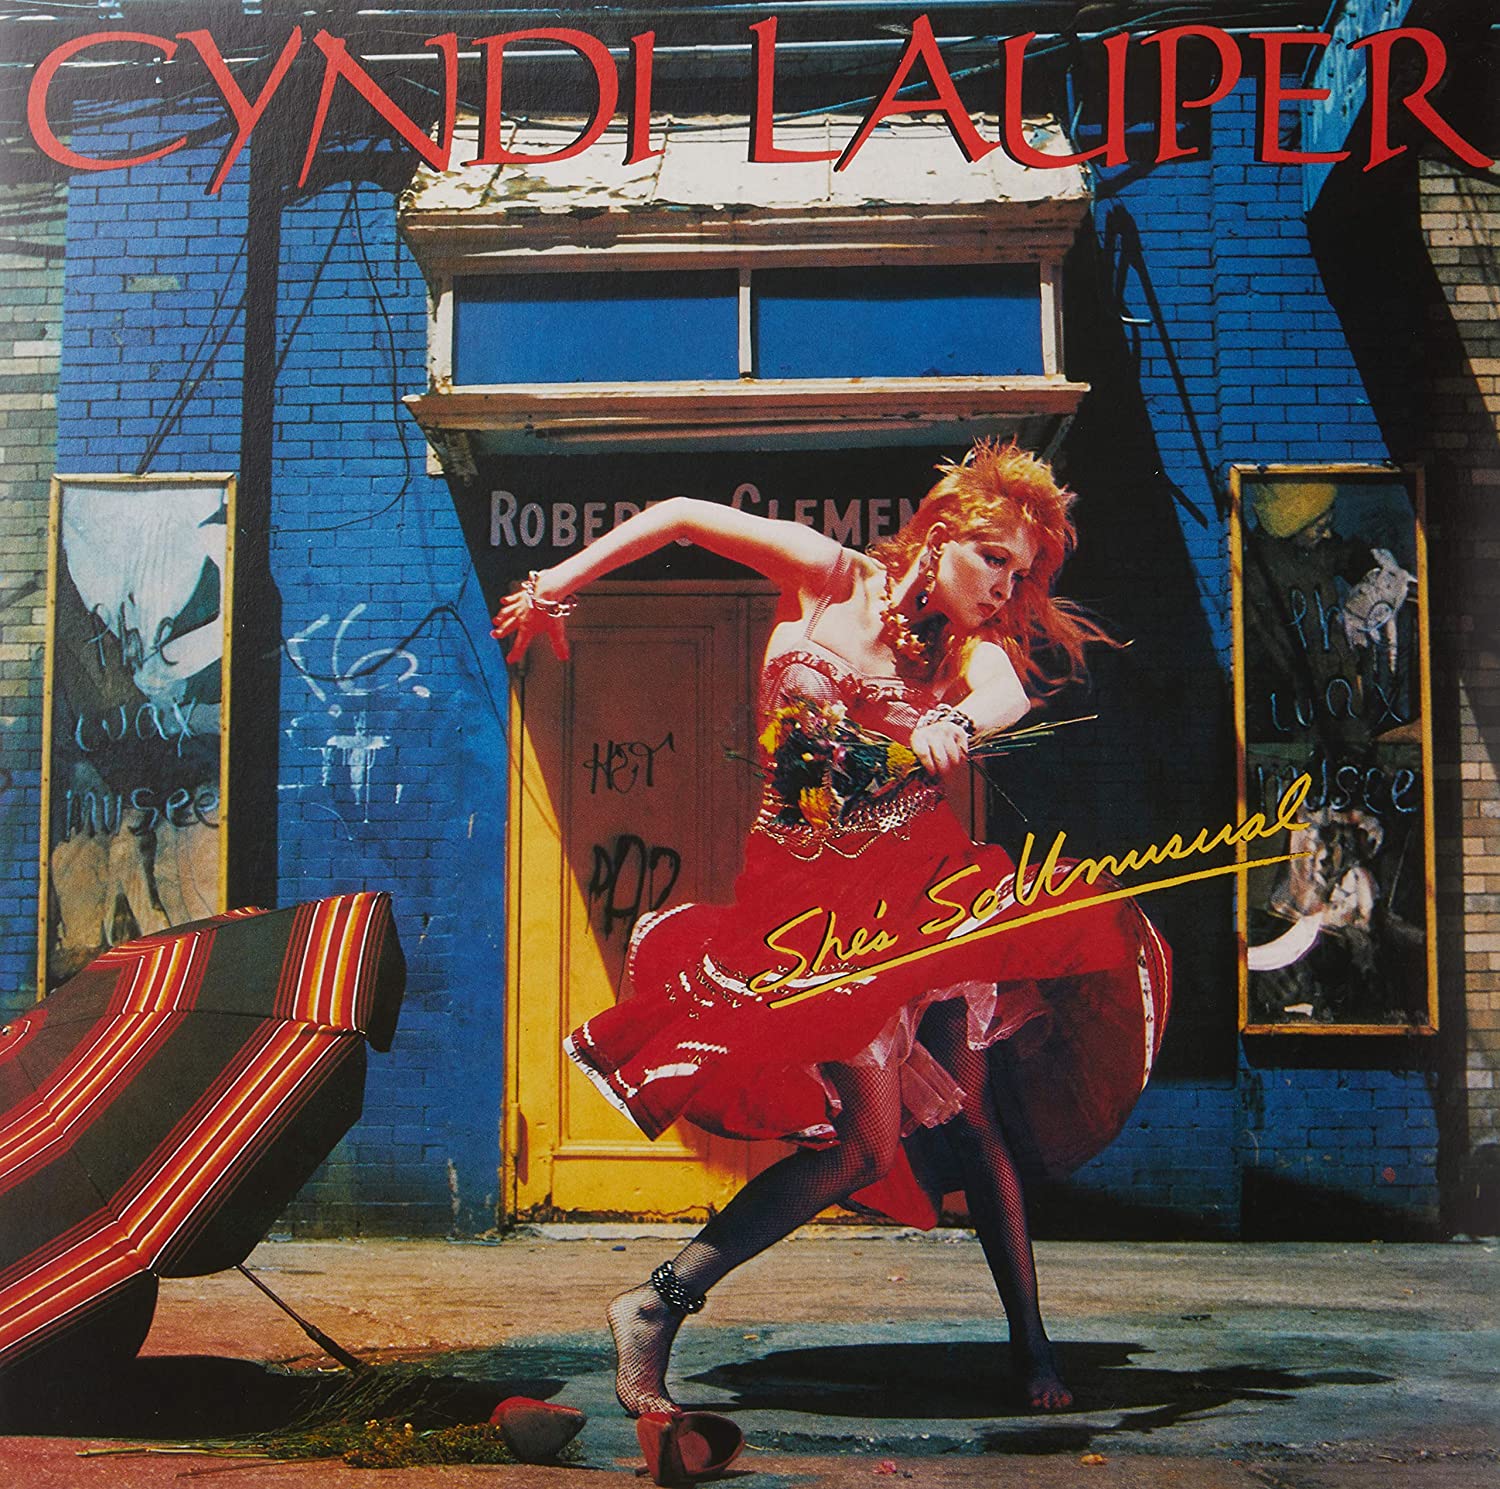 Cyndi Lauper - Elle est si inhabituelle (Vinyle rouge)